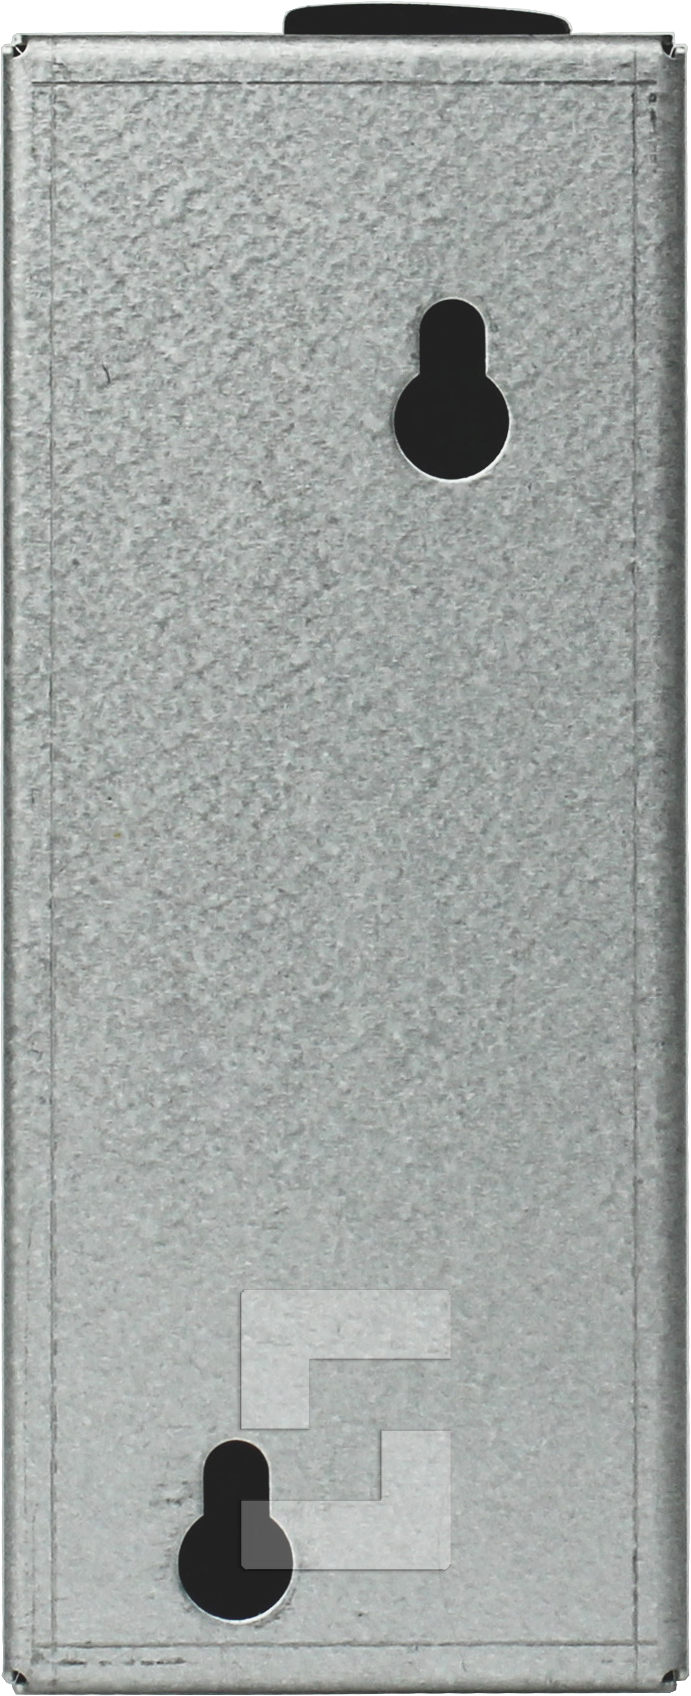 SL6-Sprechstelle für Fahrkorbdach/Schachtgrube, mit Notruftaster